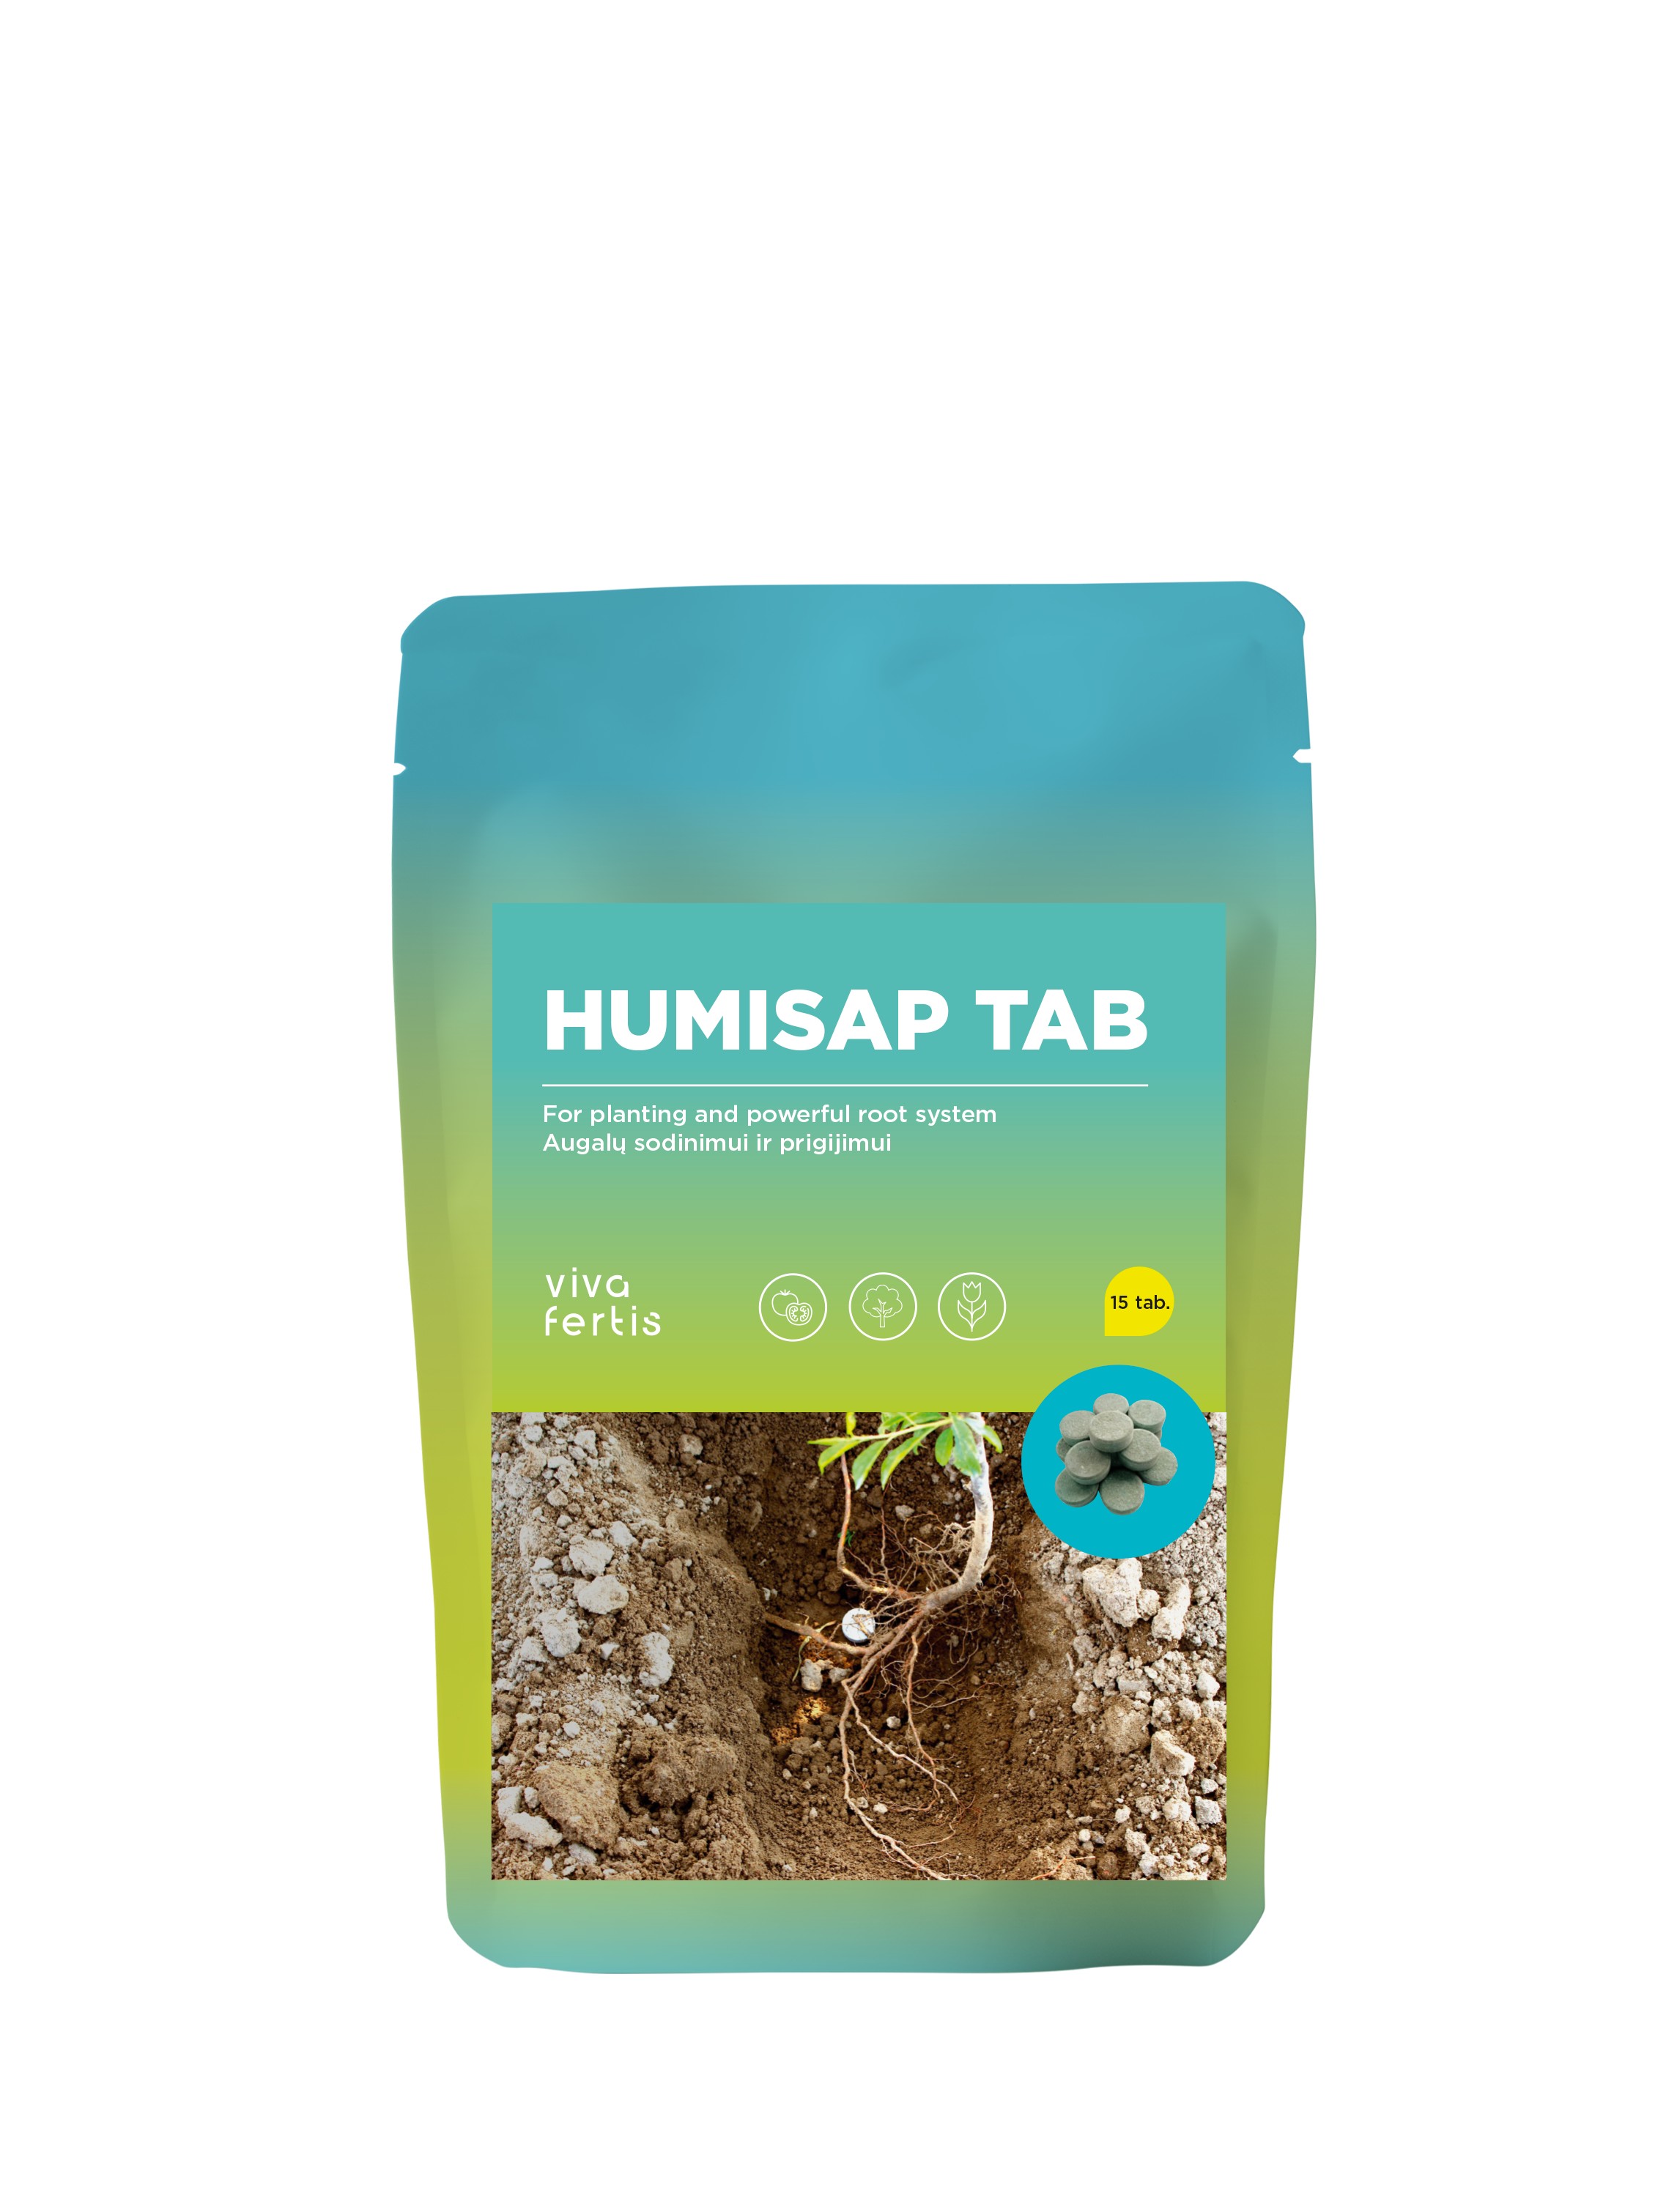 Augalų prigijimo tabletės 'Humisap Tab' - 15 vnt/pak.